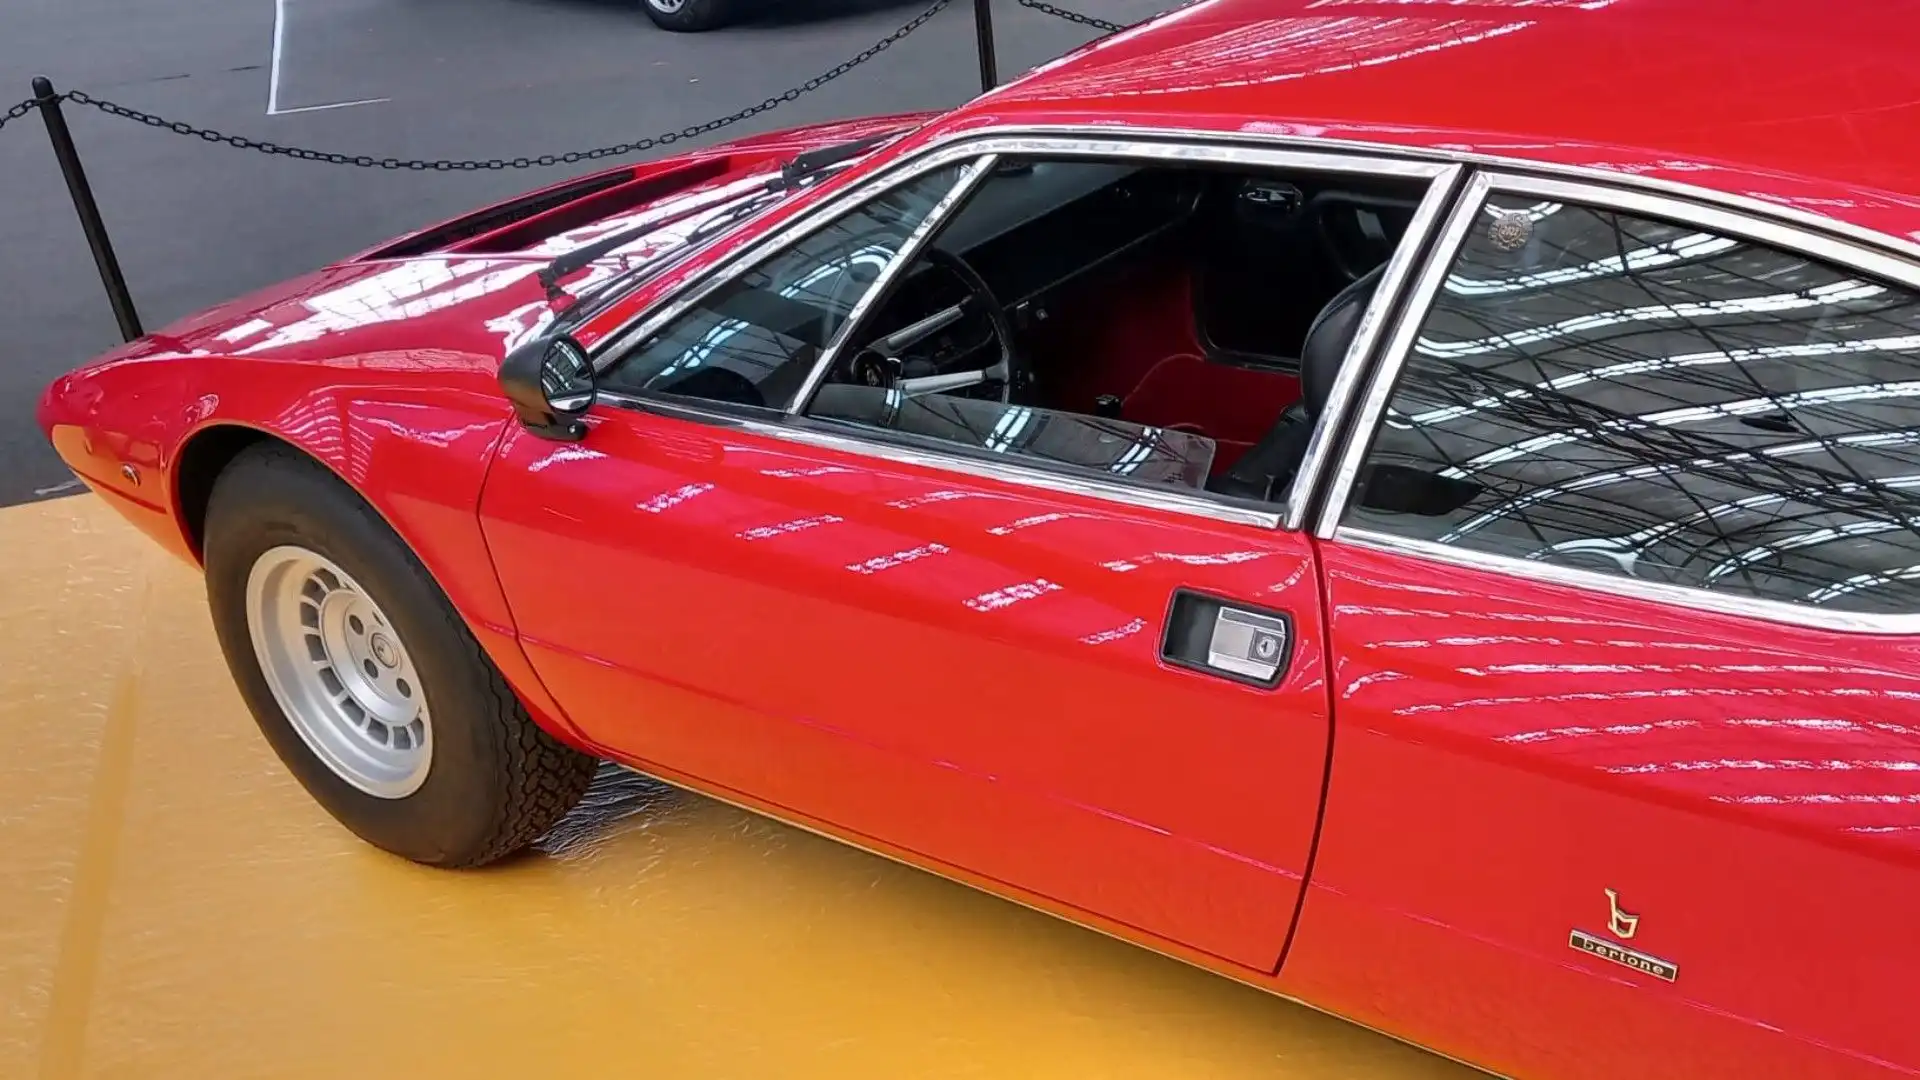 All'inizio degli anni '70 la Lamborghini decise di sviluppare un nuovo tipo di automobile